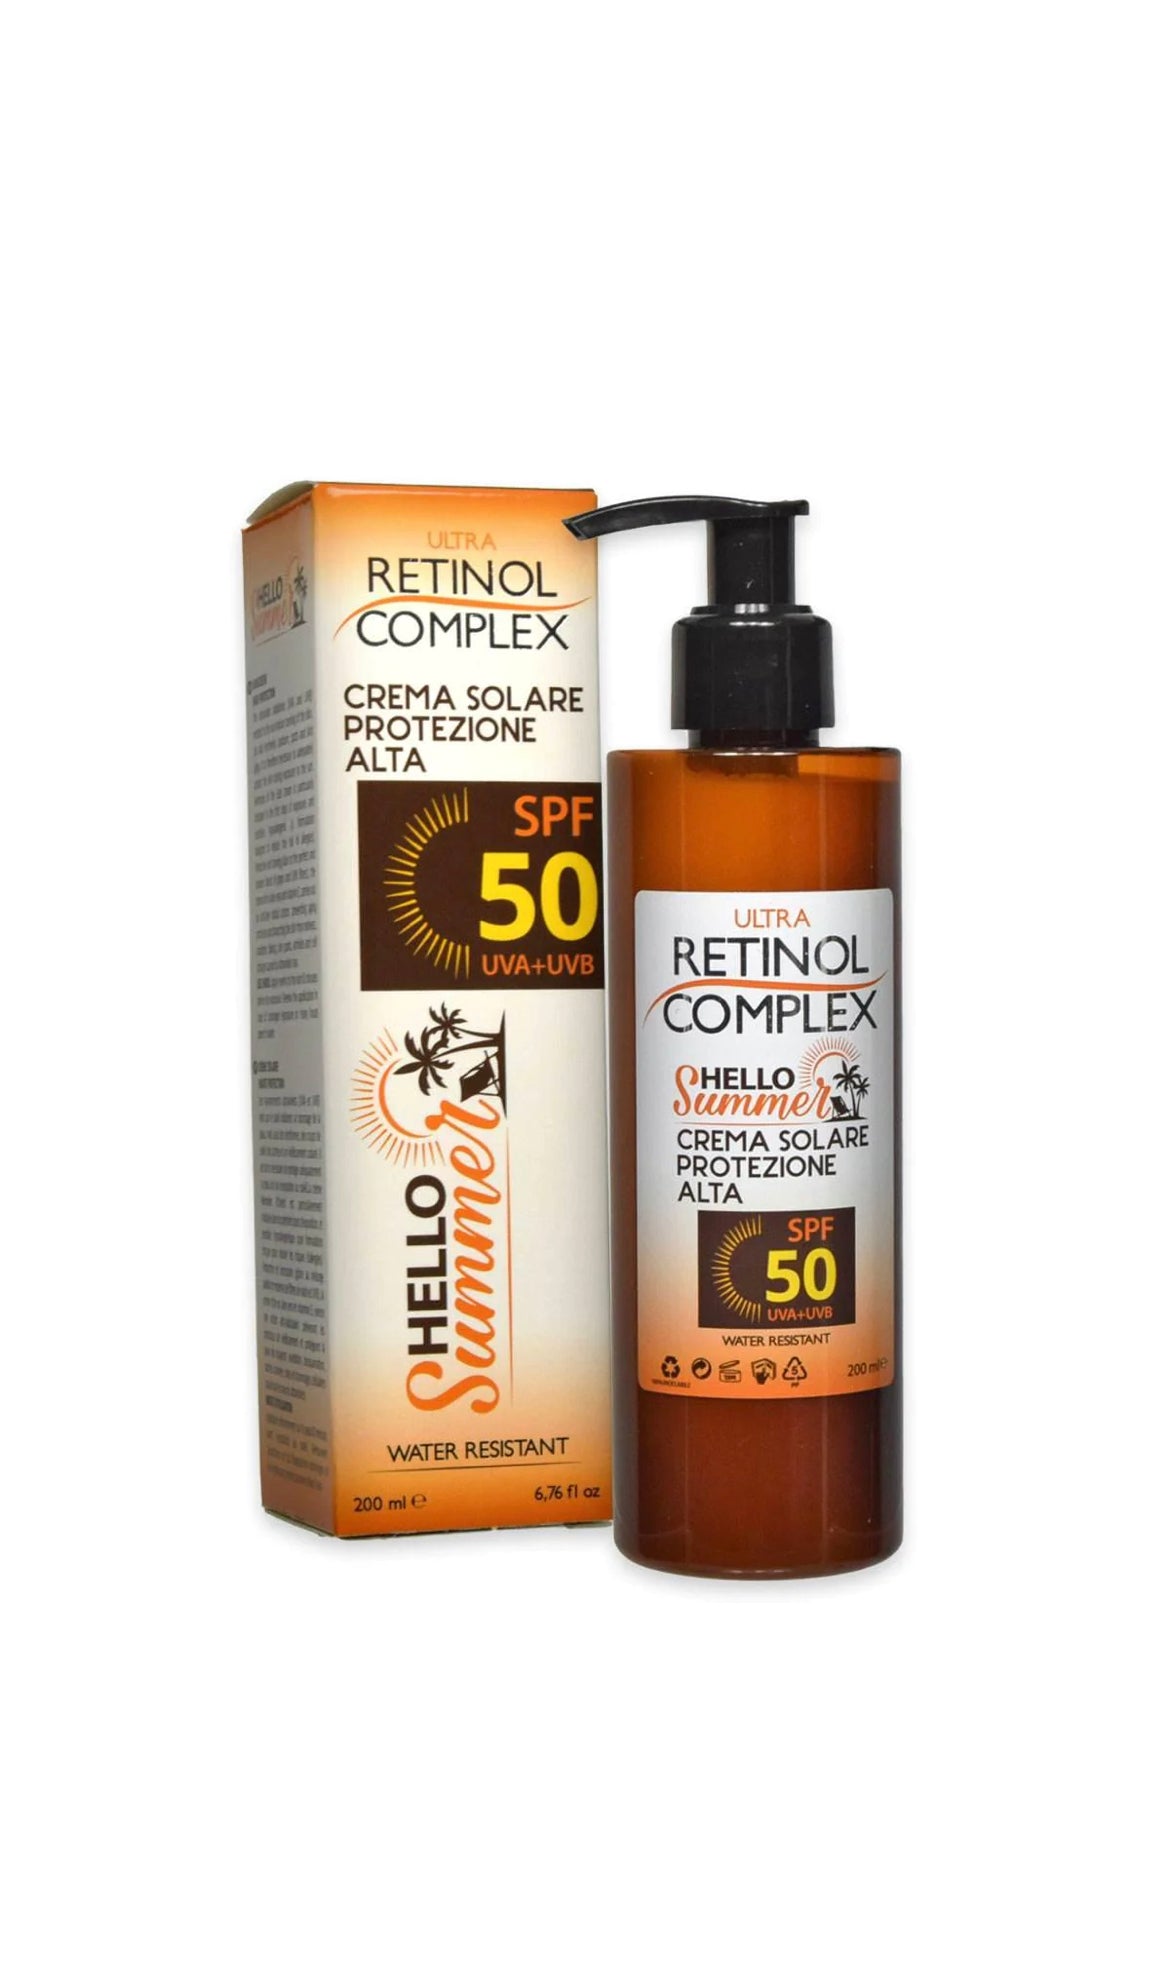 Retinol complex hello summer crema solare spf 50 200 ml